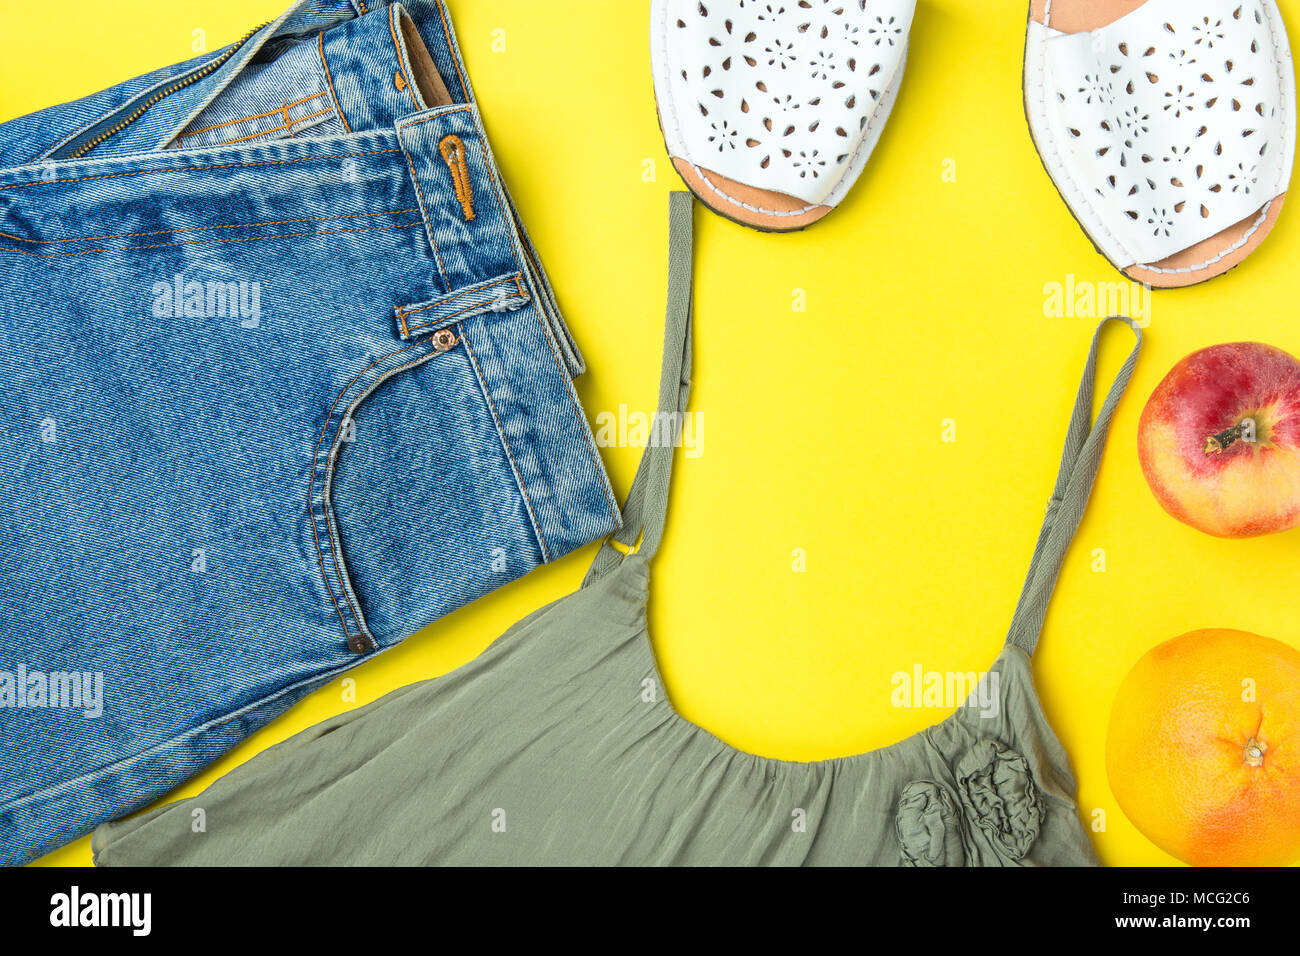 Classic donne Jeans Denim Shorts con frange di colore Oliva Tank Top Espandrille sandali di pompelmo Apple su sfondo giallo. Lay piatto. Street estate Foto Stock